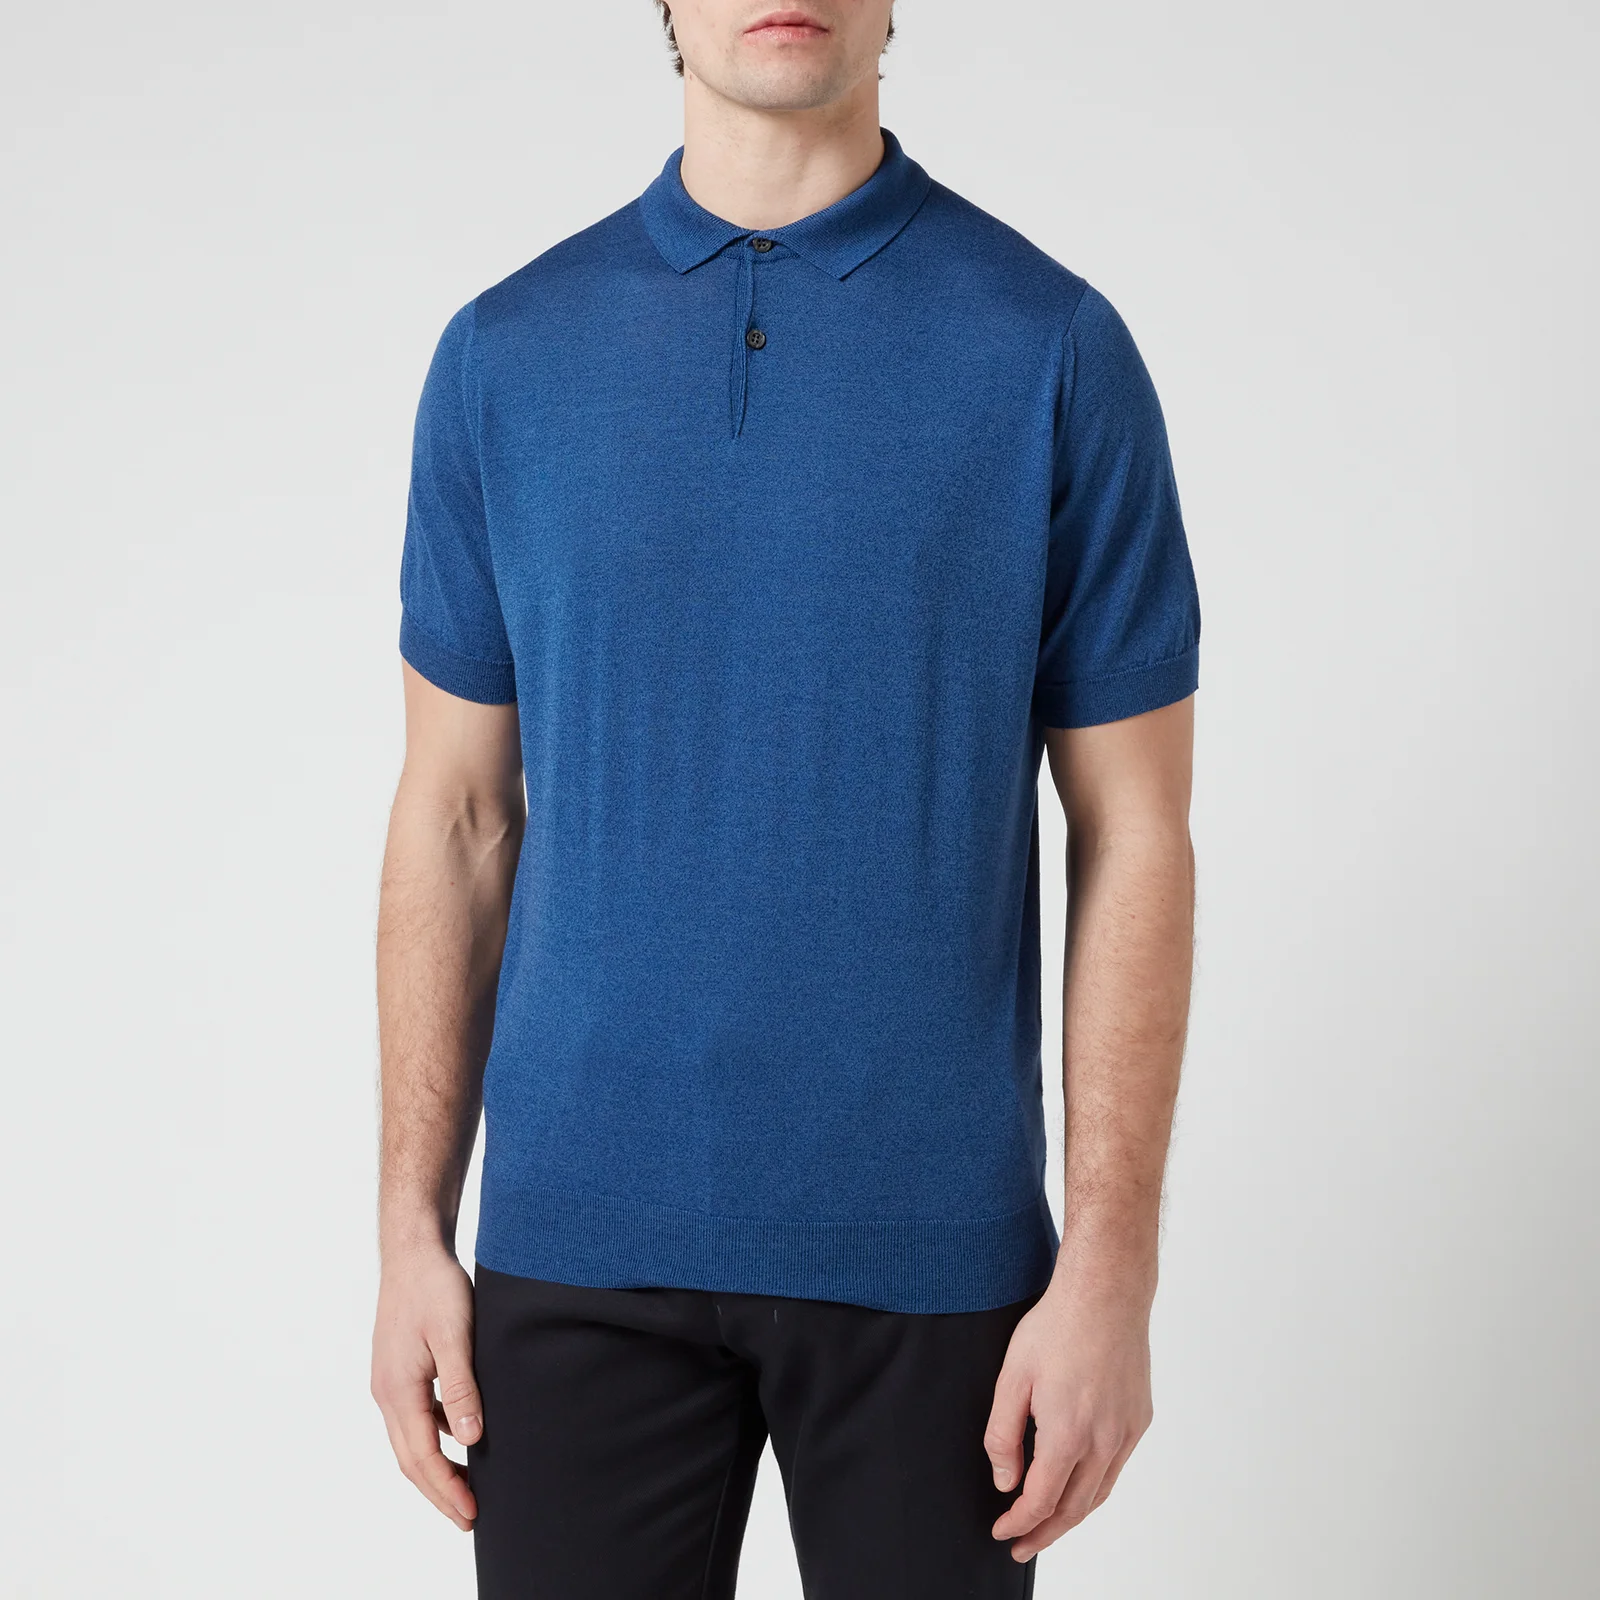 John Smedley Men's Cpayton Polo Shirt - River Blue Image 1